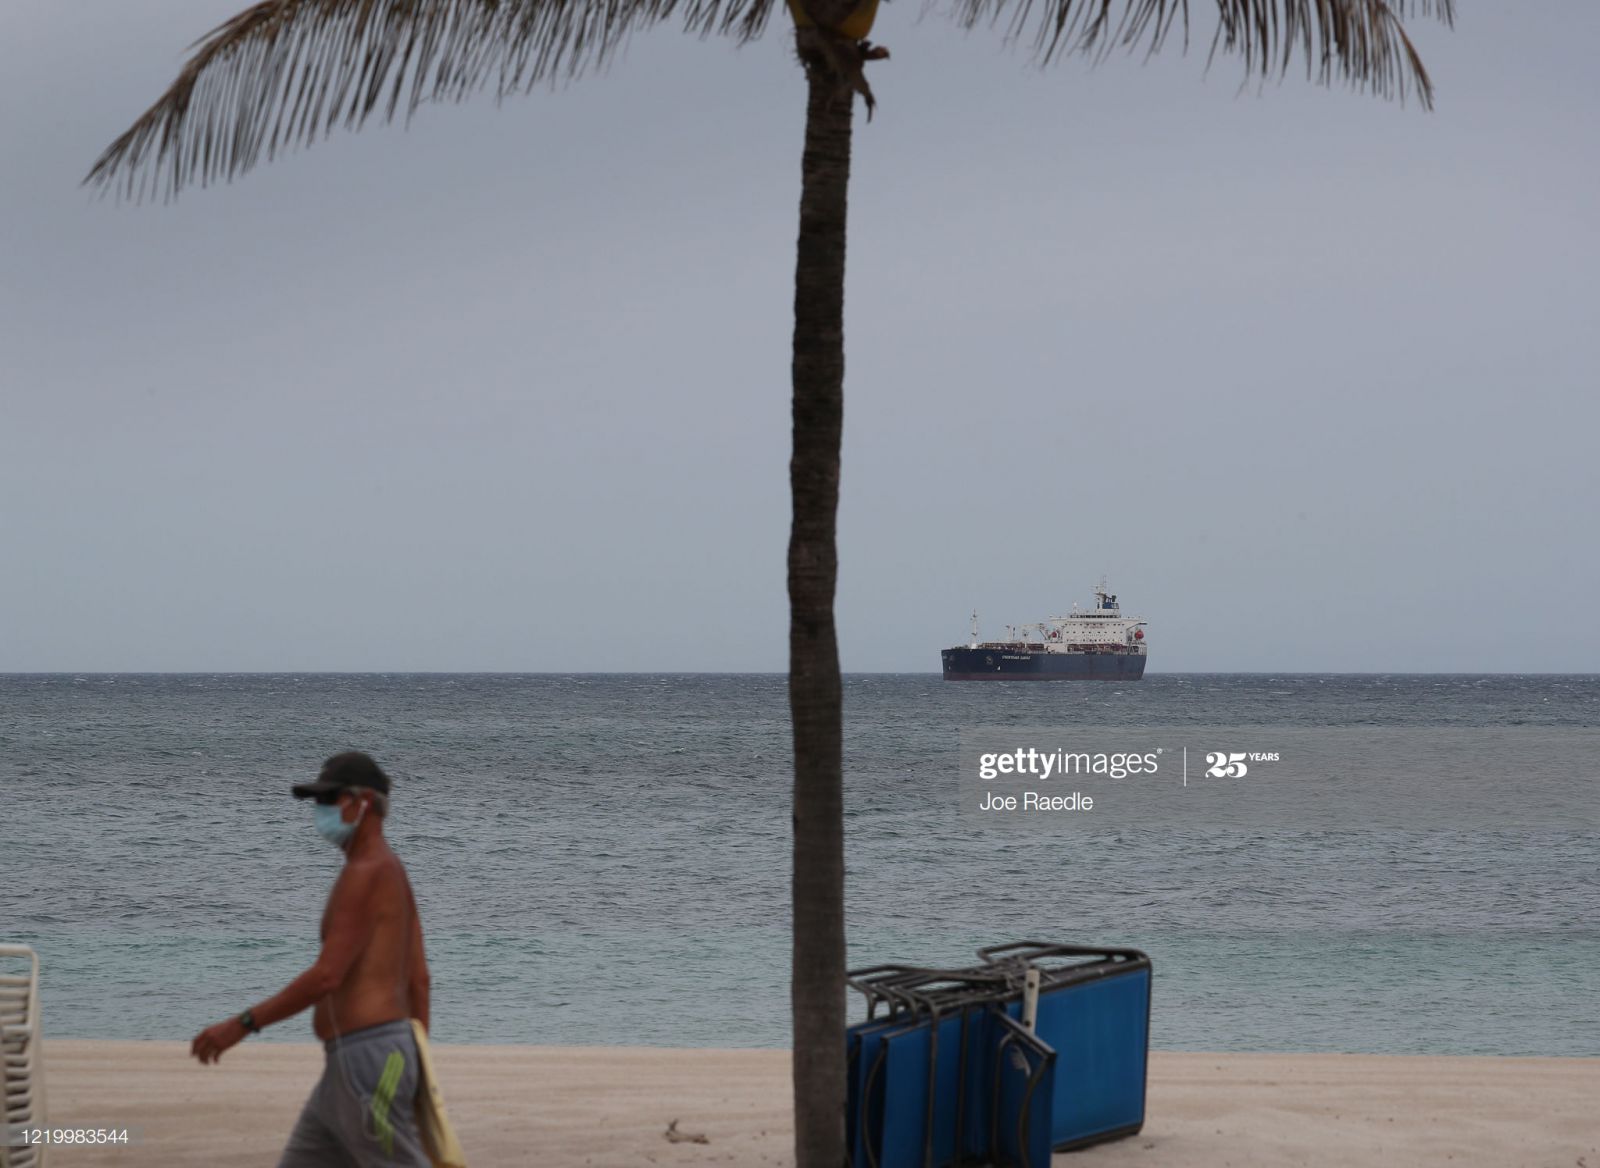 Tàu chở dầu thô, Chemtrans Cancale, được nhìn thấy neo đậu ngoài khơi khi chờ cập cảng tại cảng Everglades vào ngày 20 tháng 4 năm 2020 tại Fort Lauderdale, Florida. (Ảnh của Joe Raedle / Getty Images).